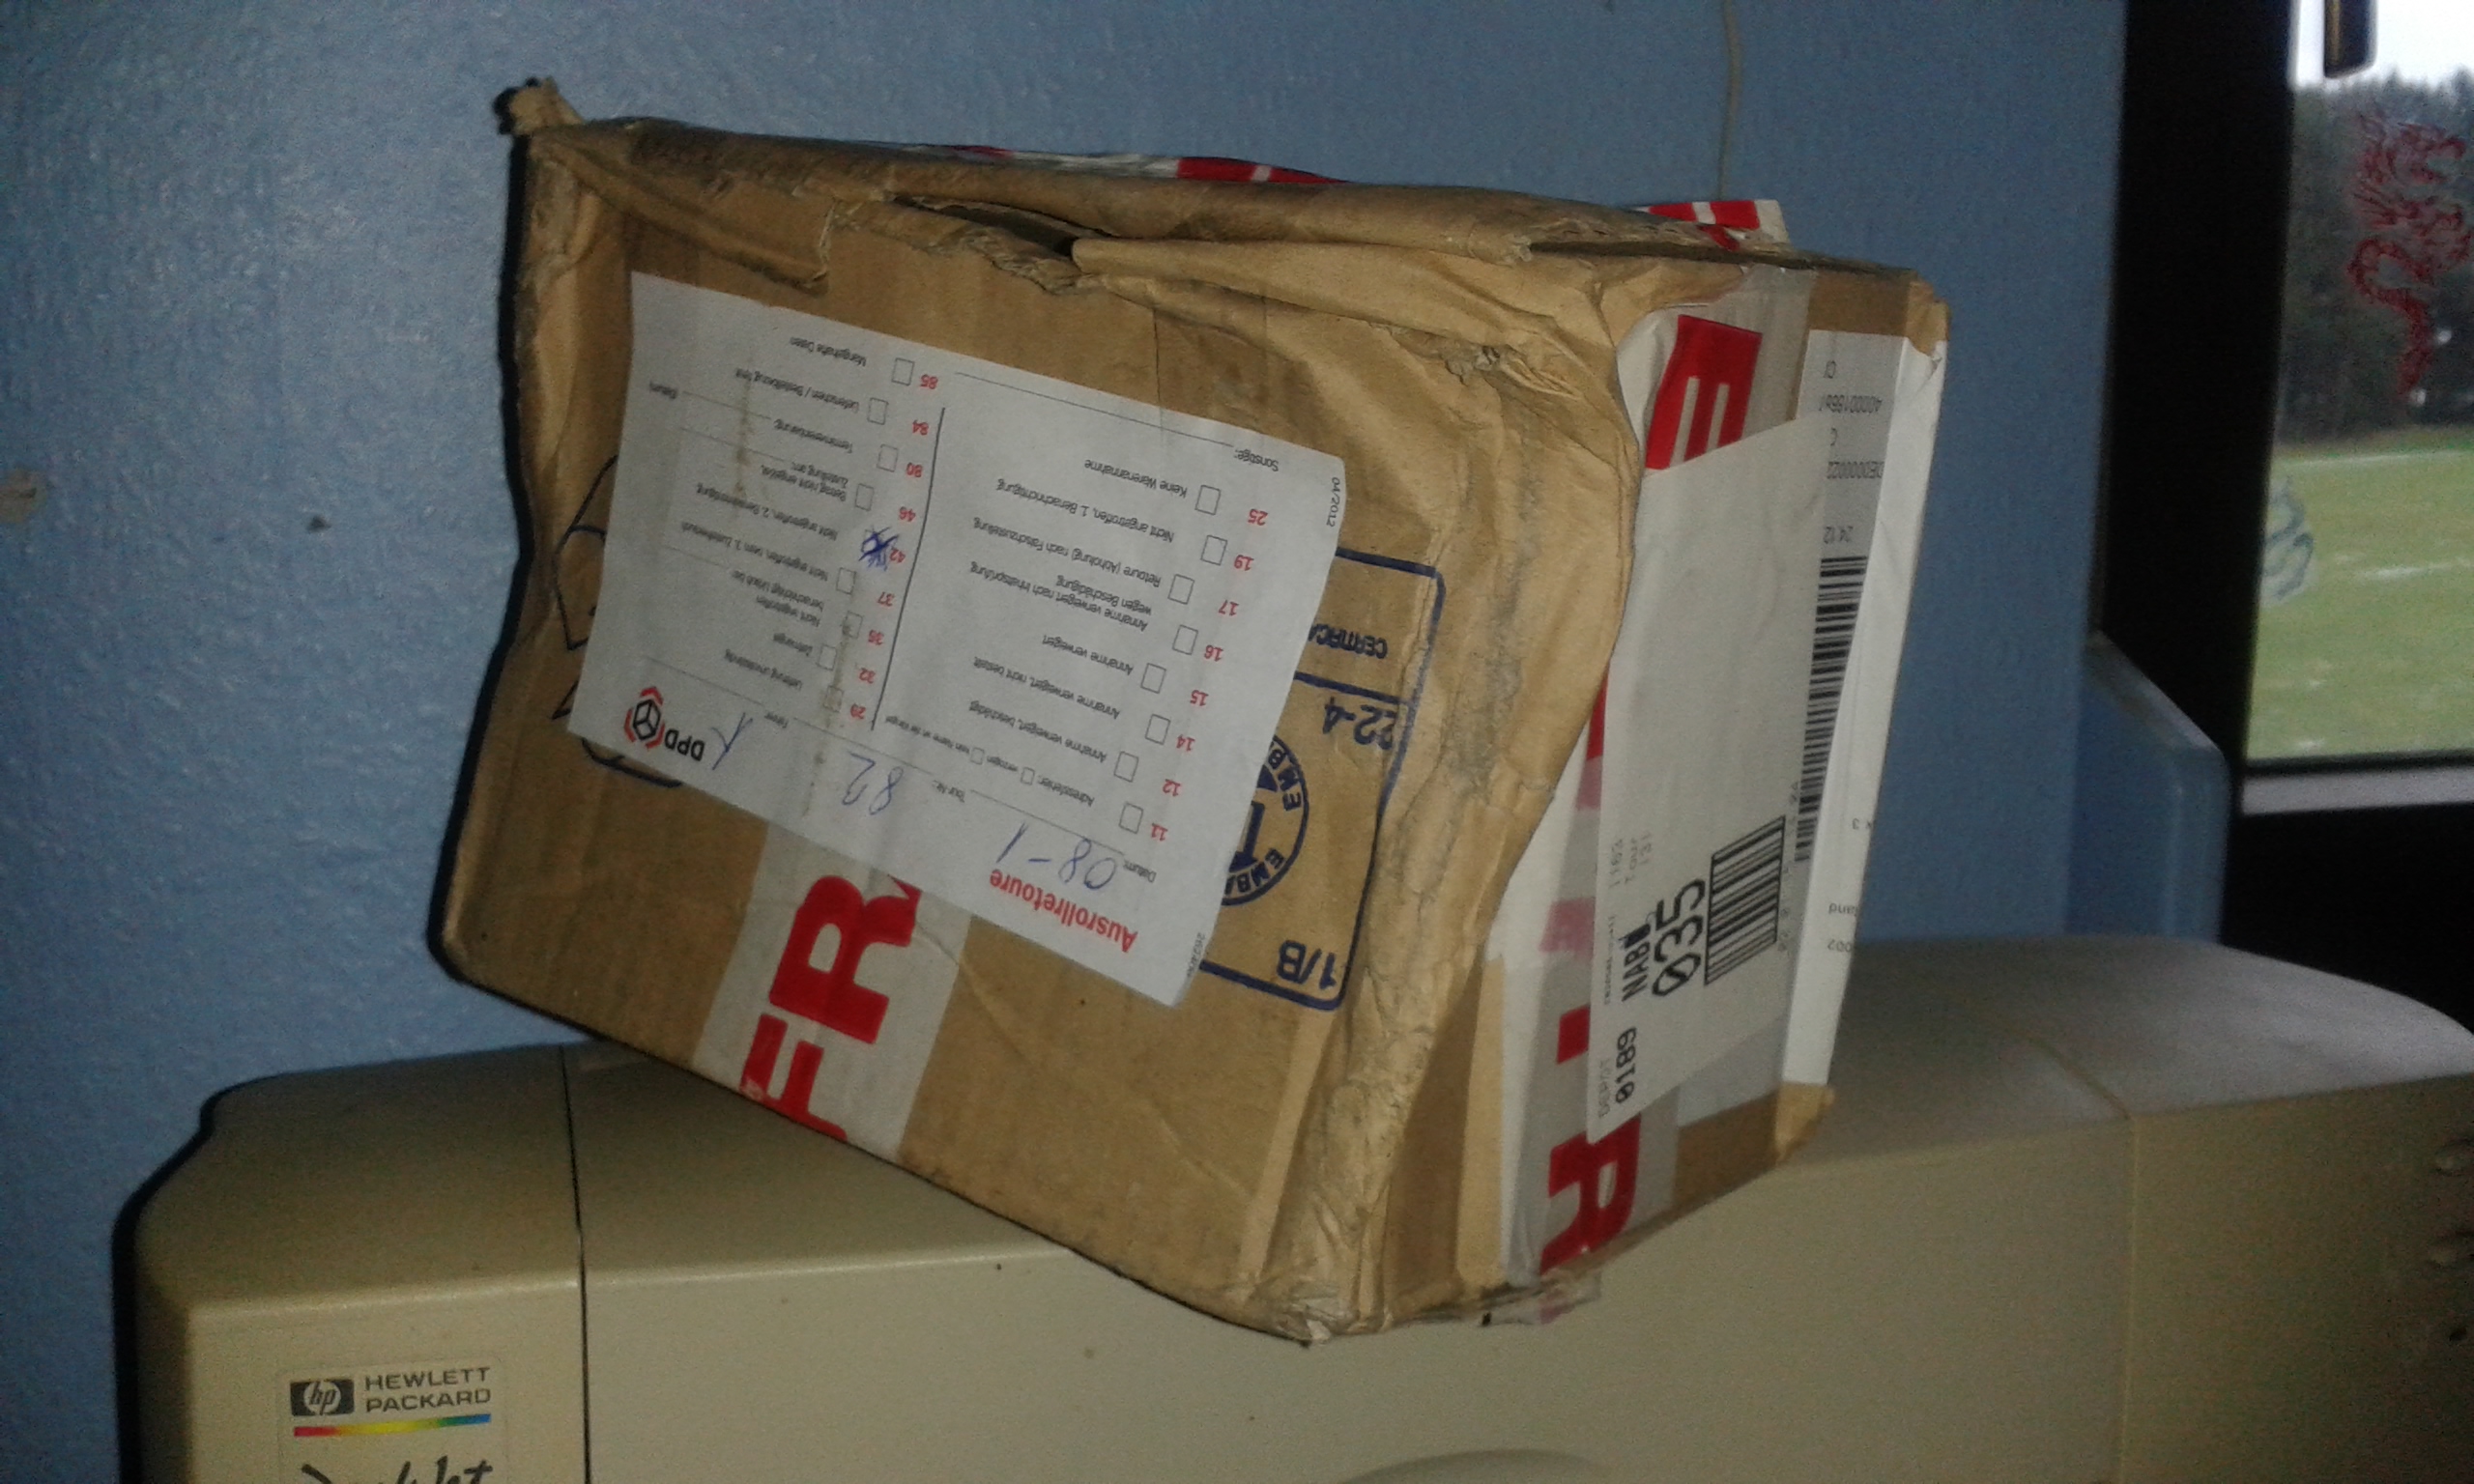 Typischer Zustand eines Päckchens, das 16 Tage (!) nach Warenausgang beim Lieferanten durch DPD zugestellt wurde. Ansicht schräg von rechts